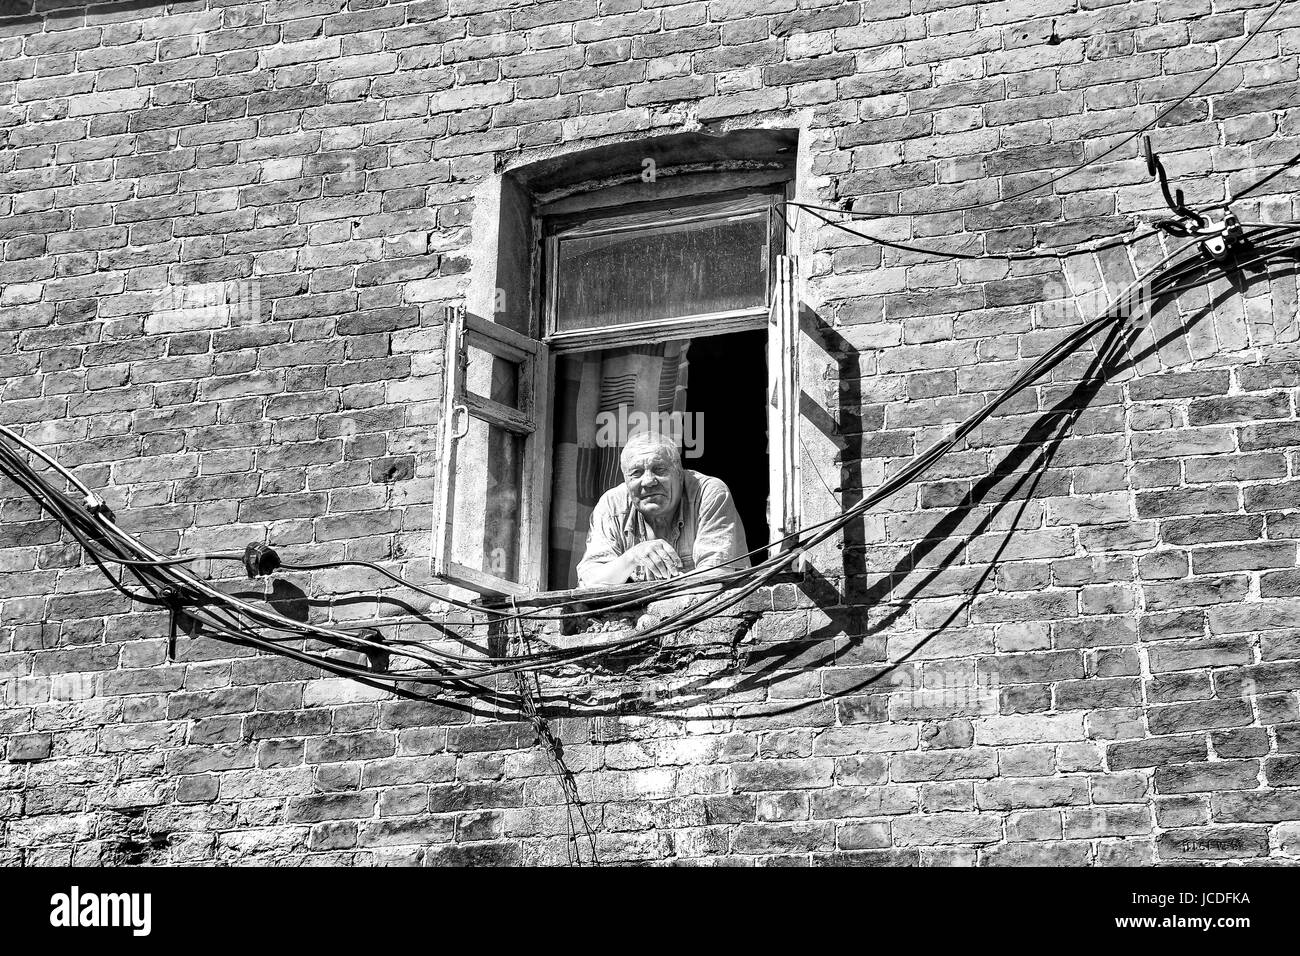 VALAAM, Russia - 15 Ago 2015, la vista di un uomo vecchio che guarda fuori da una finestra di un edificio di mattoni, su 15 Ago 2015 in VALAAM, RUSSIA Foto Stock